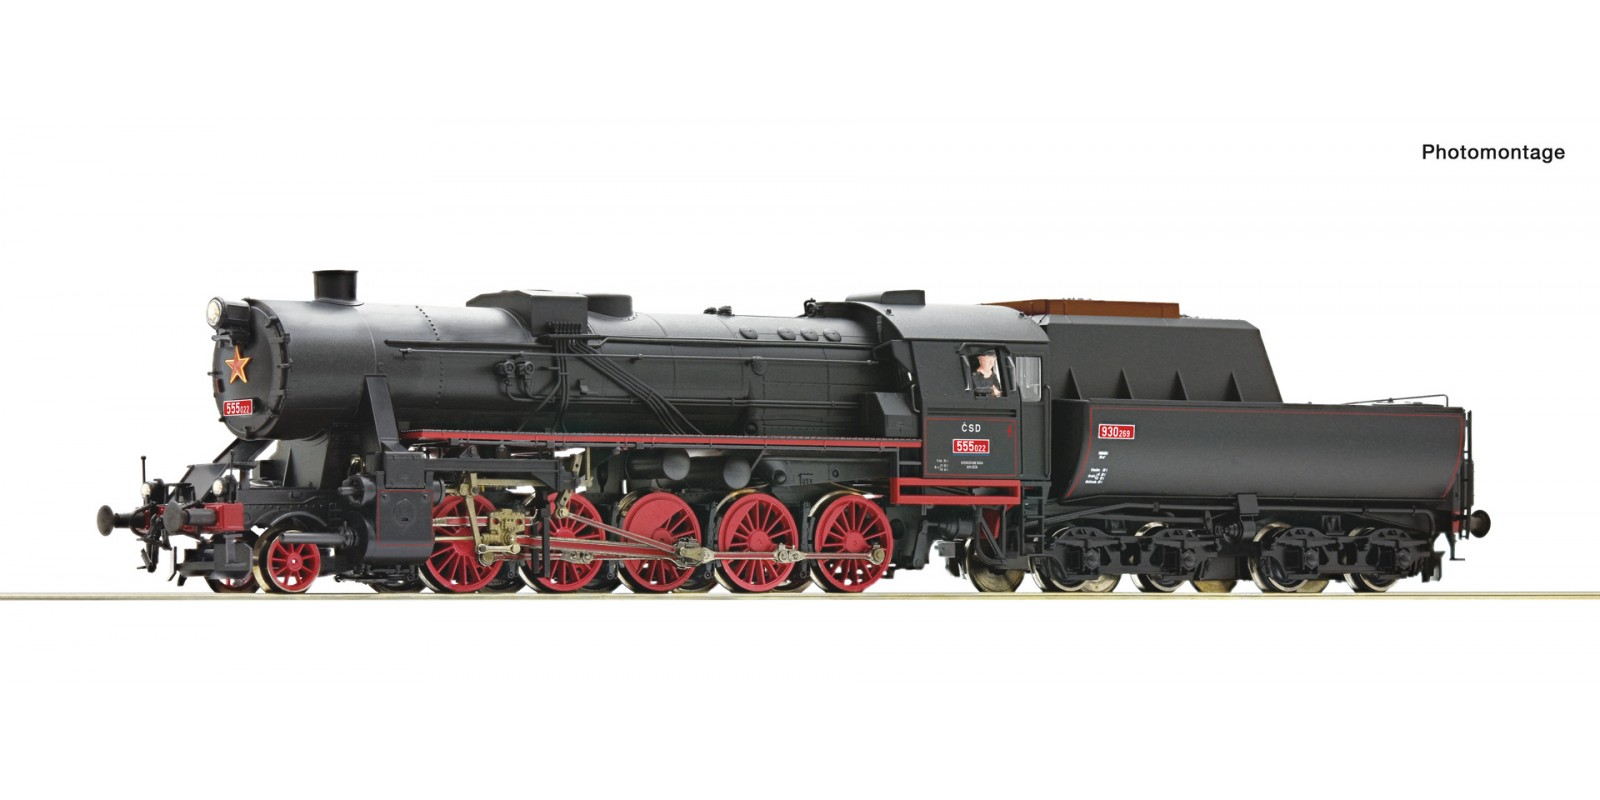 RO7110001 Steam locomotive class 555.0, CSD